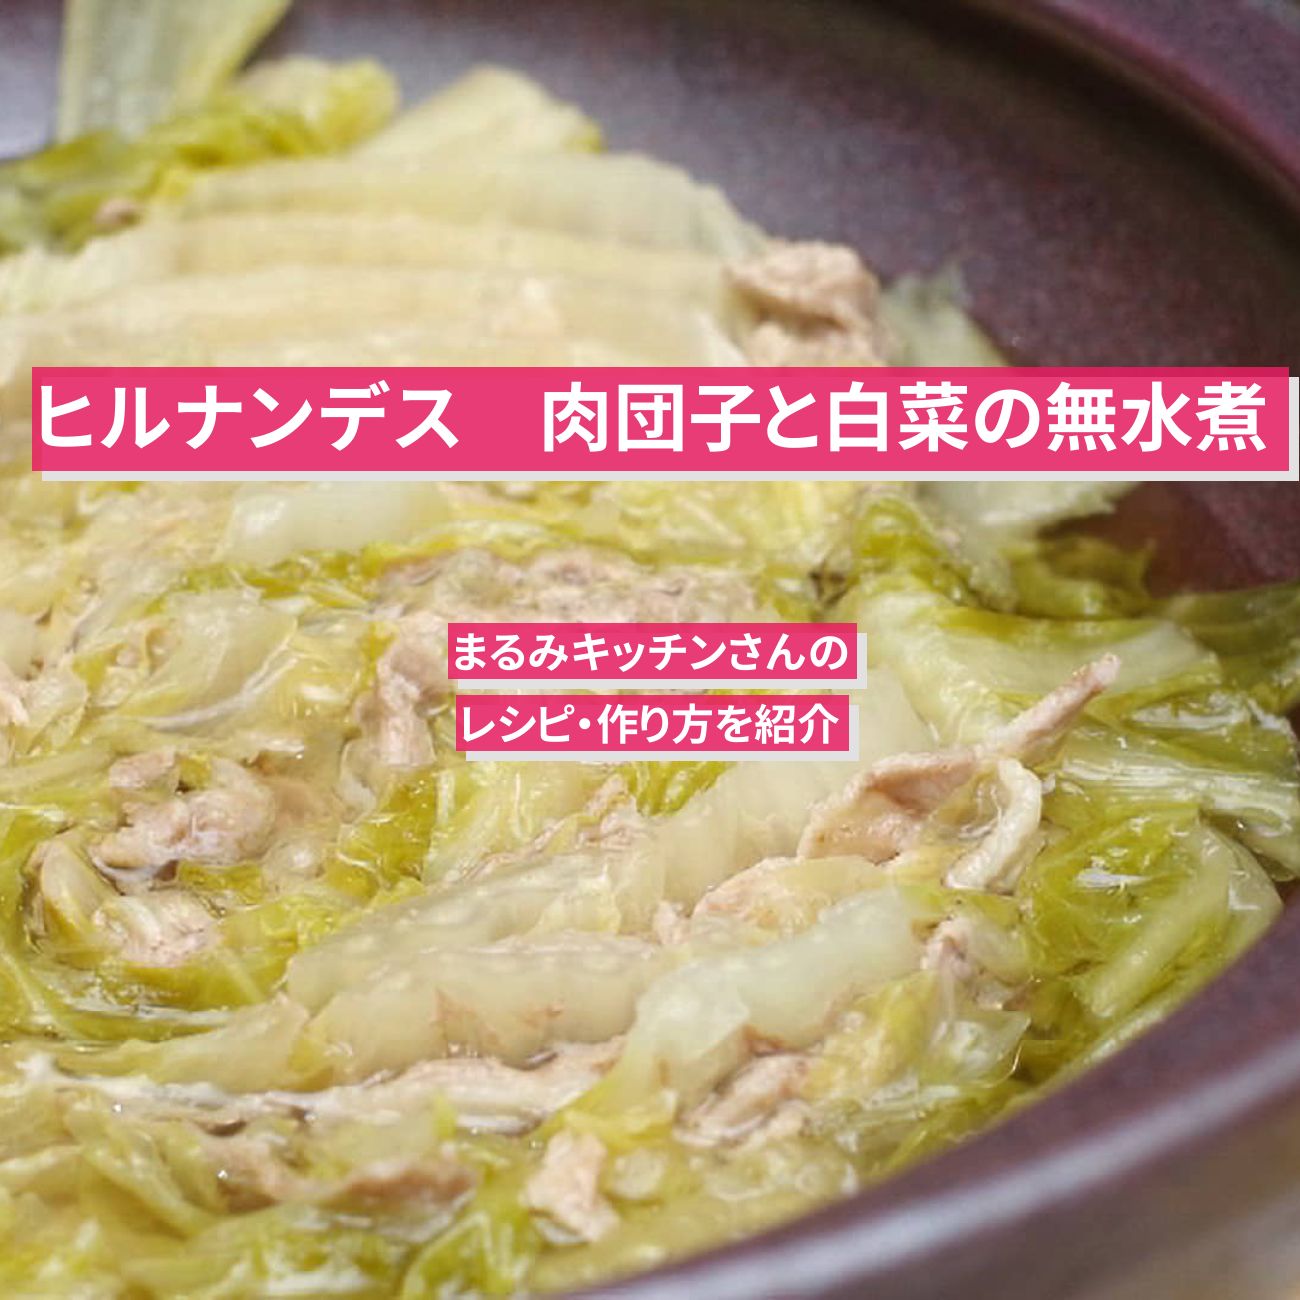 【ヒルナンデス】『肉団子と白菜の無水煮』まるみキッチンさんのレシピ・作り方を紹介